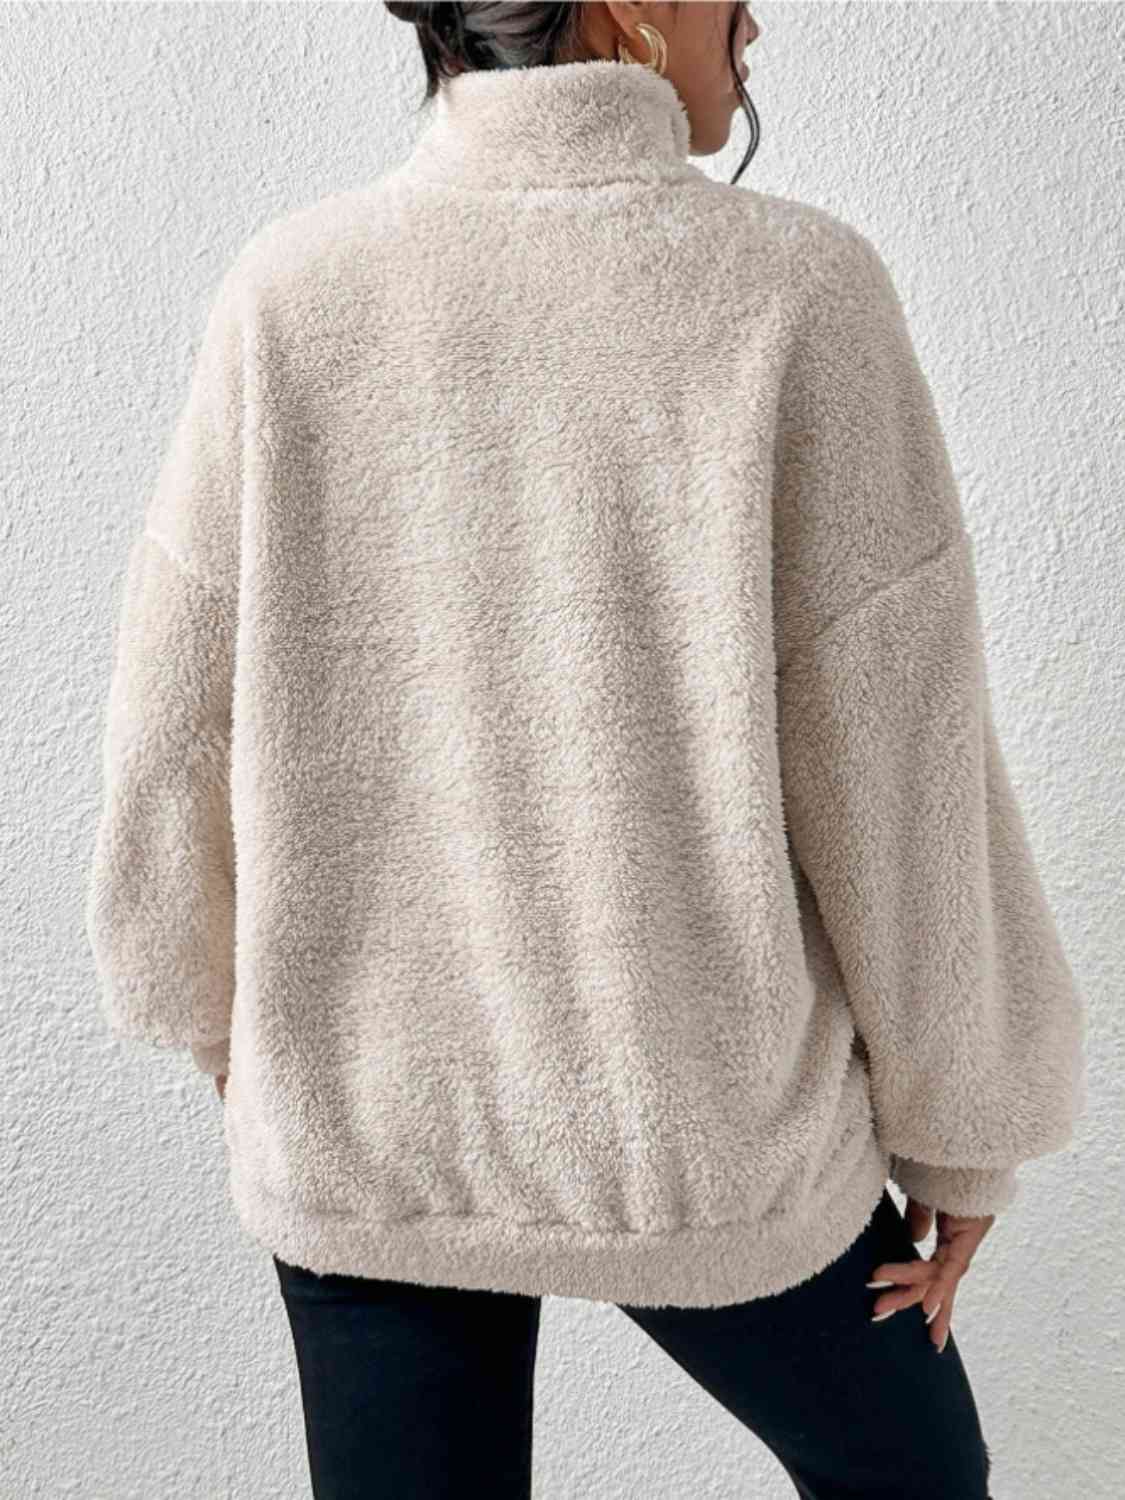 Women's Half-Zip Drop-Shoulder Sweatshirt with Pocket